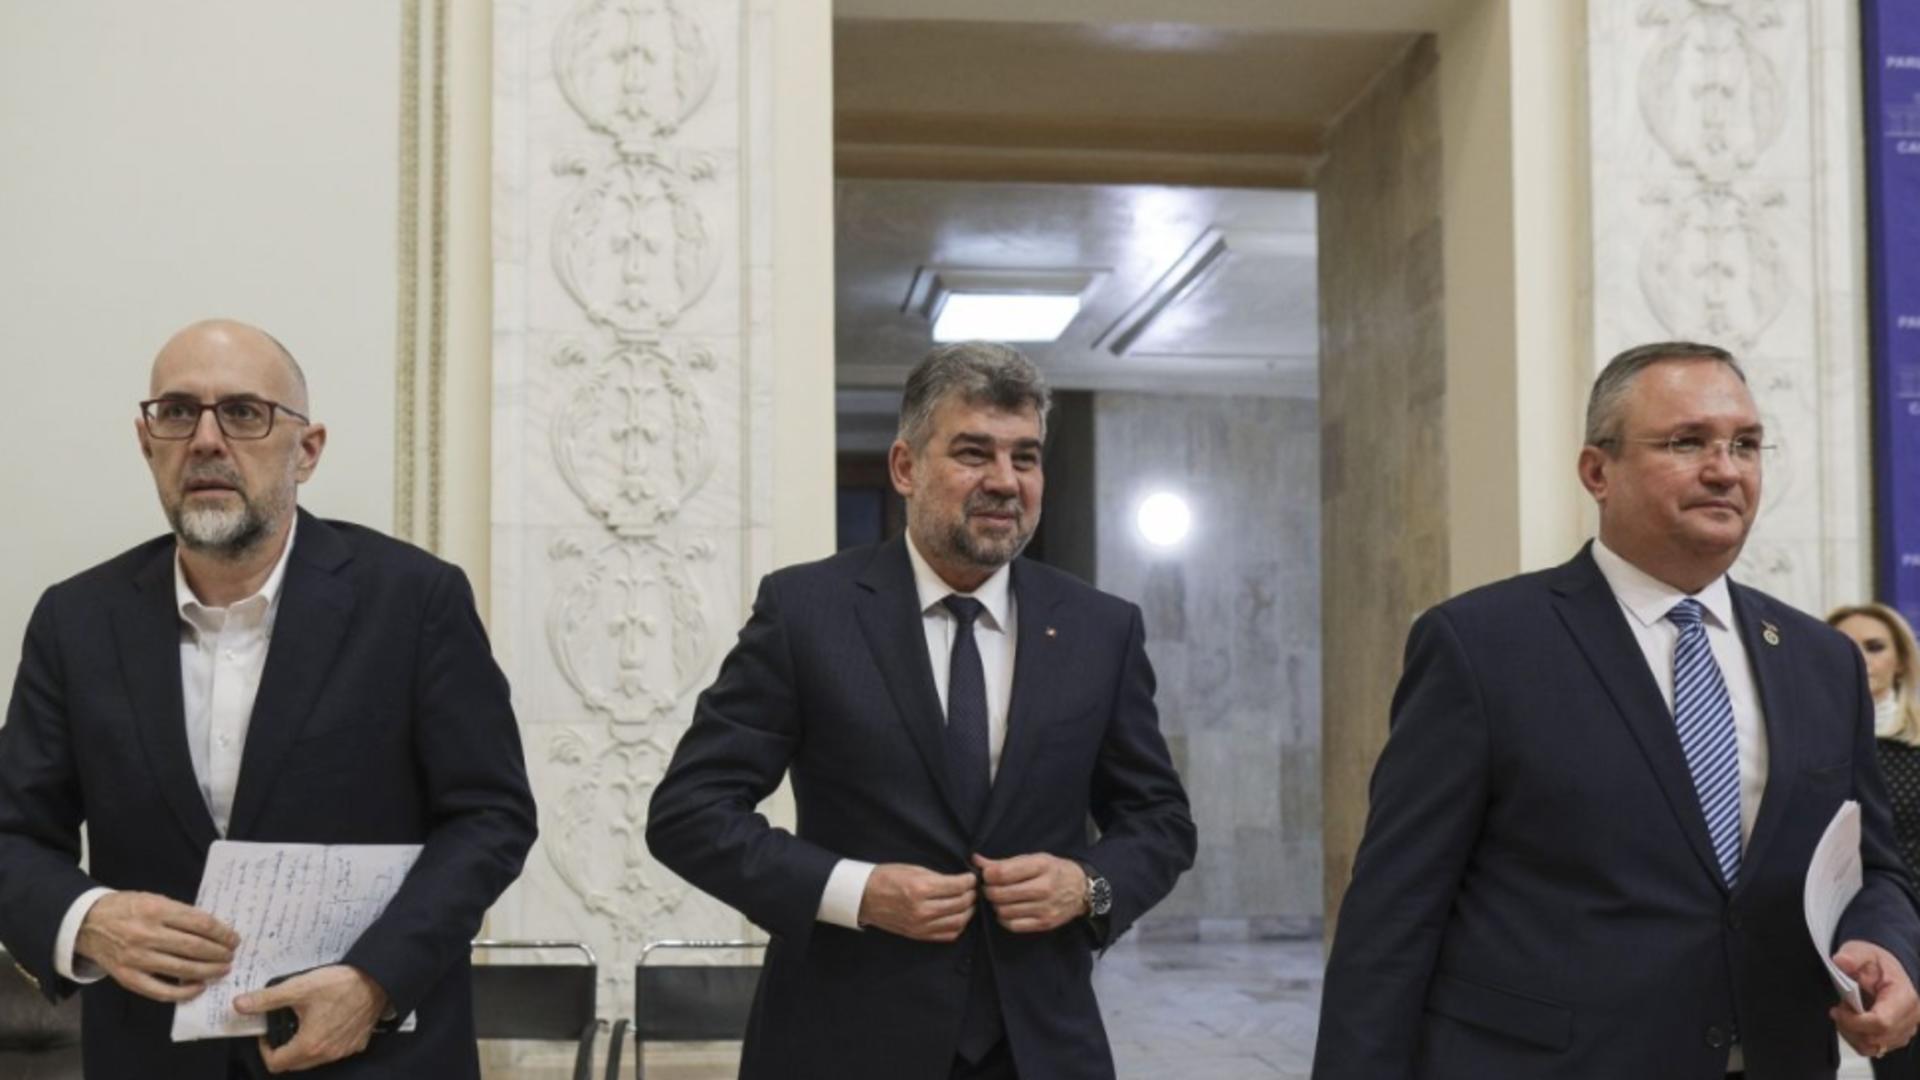 Coaliția guvernamentală - Nicolae Ciucă, Marcel Ciolacu, Kelemen Hunor Foto: INQUAM/Octav Ganea